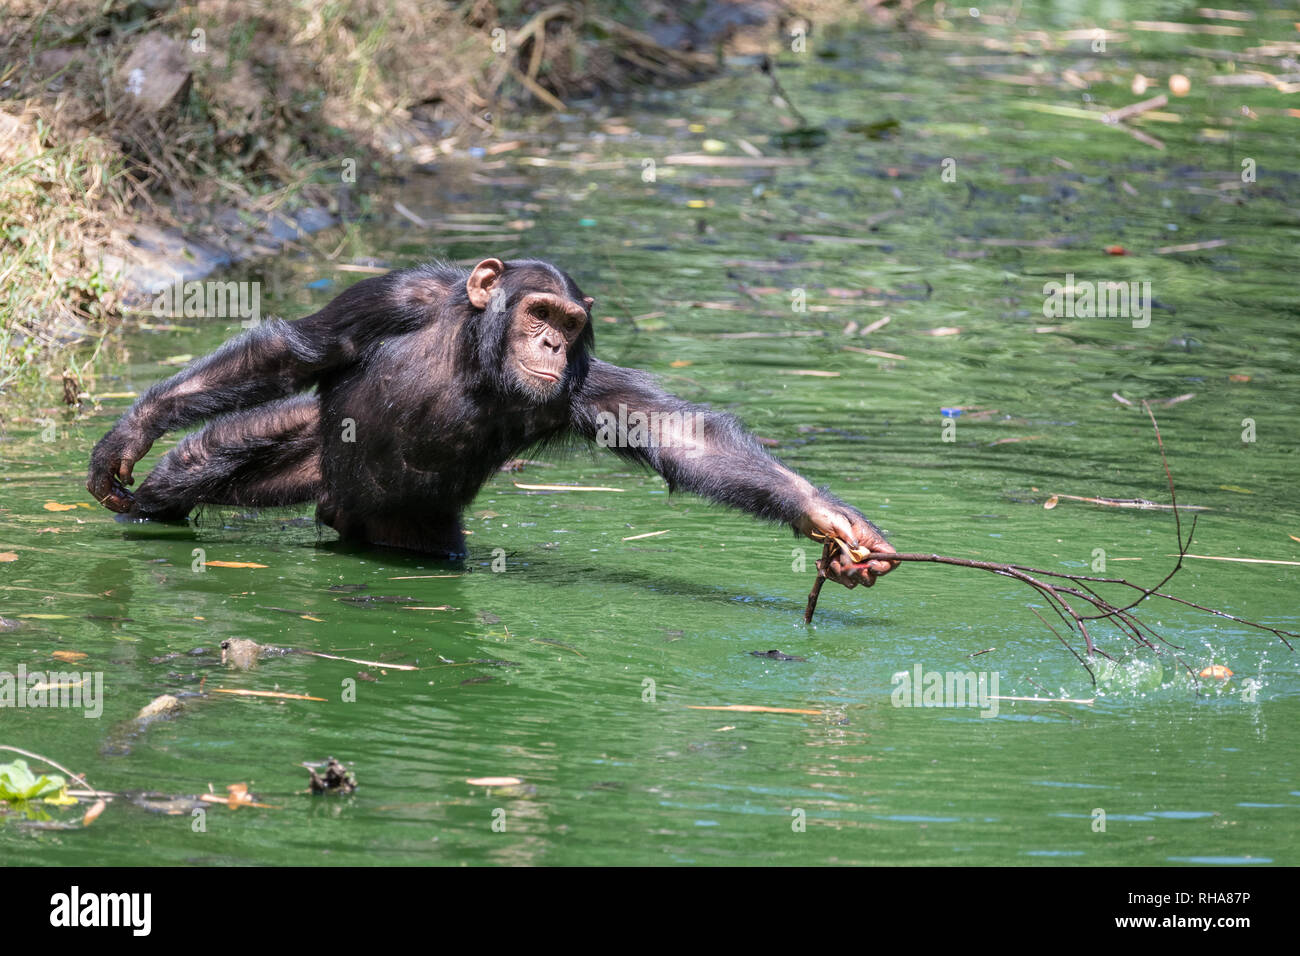 Mâle chimpanzé (Pan troglodytes) Direction générale de la pêche en étang avec zoo, Entebbe, Ouganda Banque D'Images